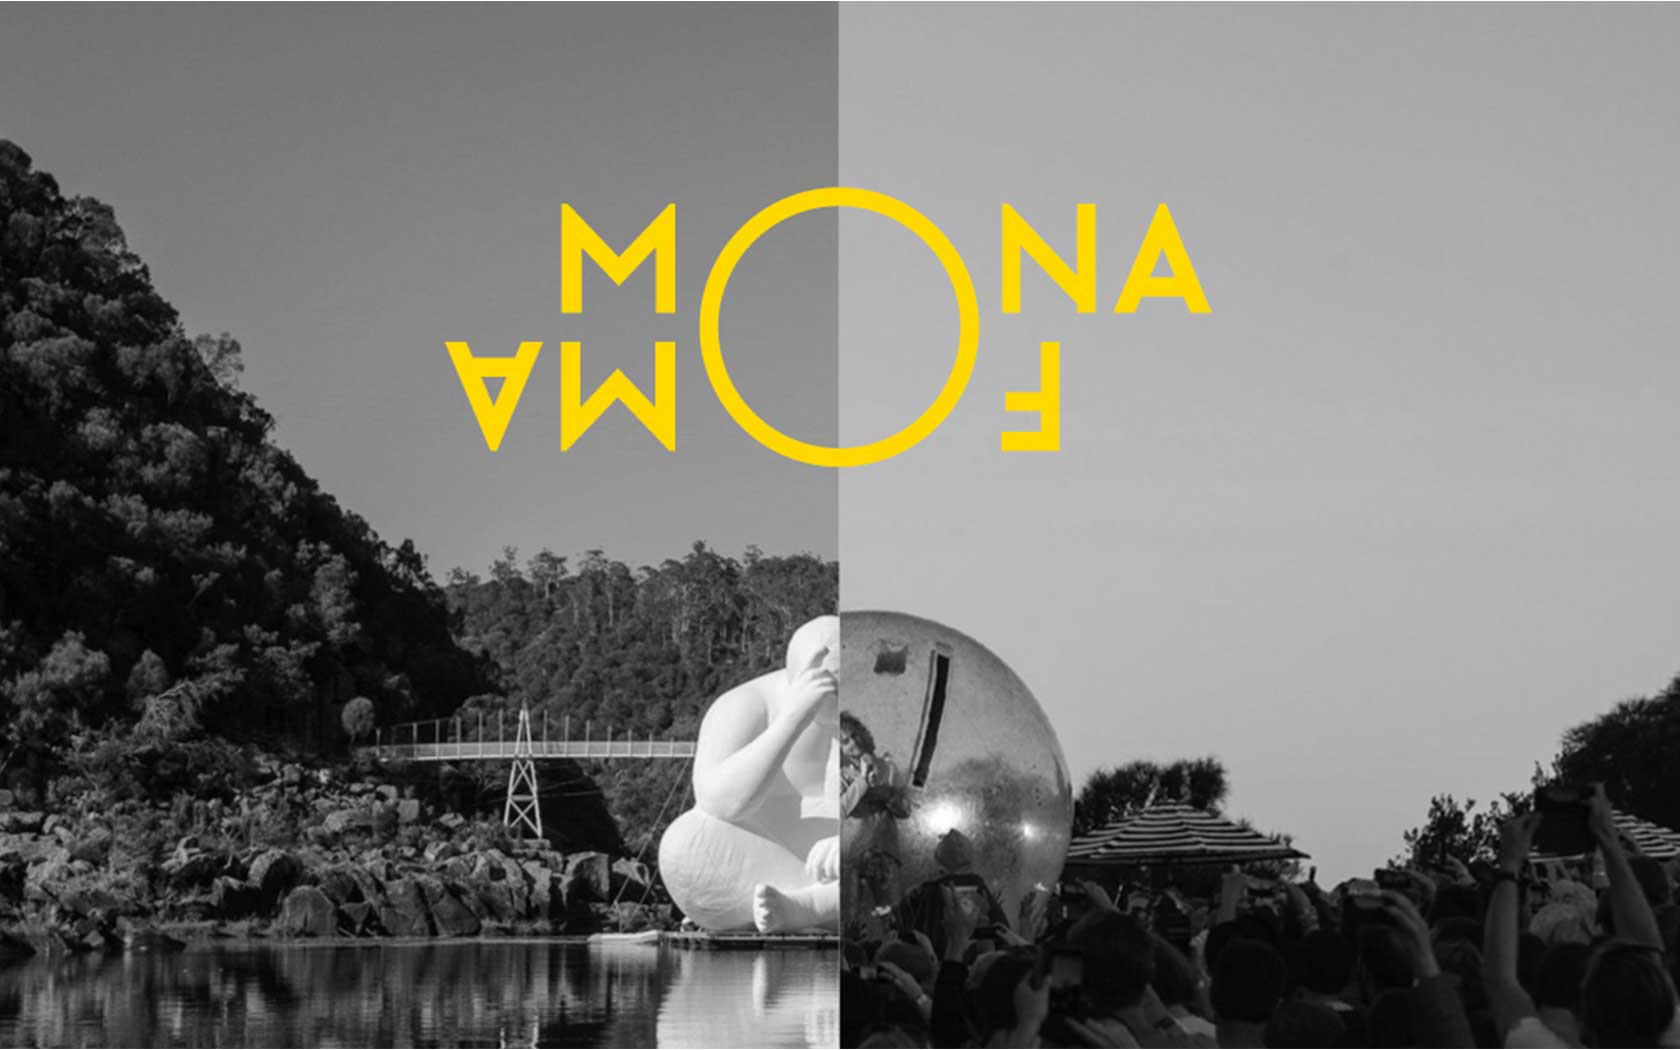 Mona Foma